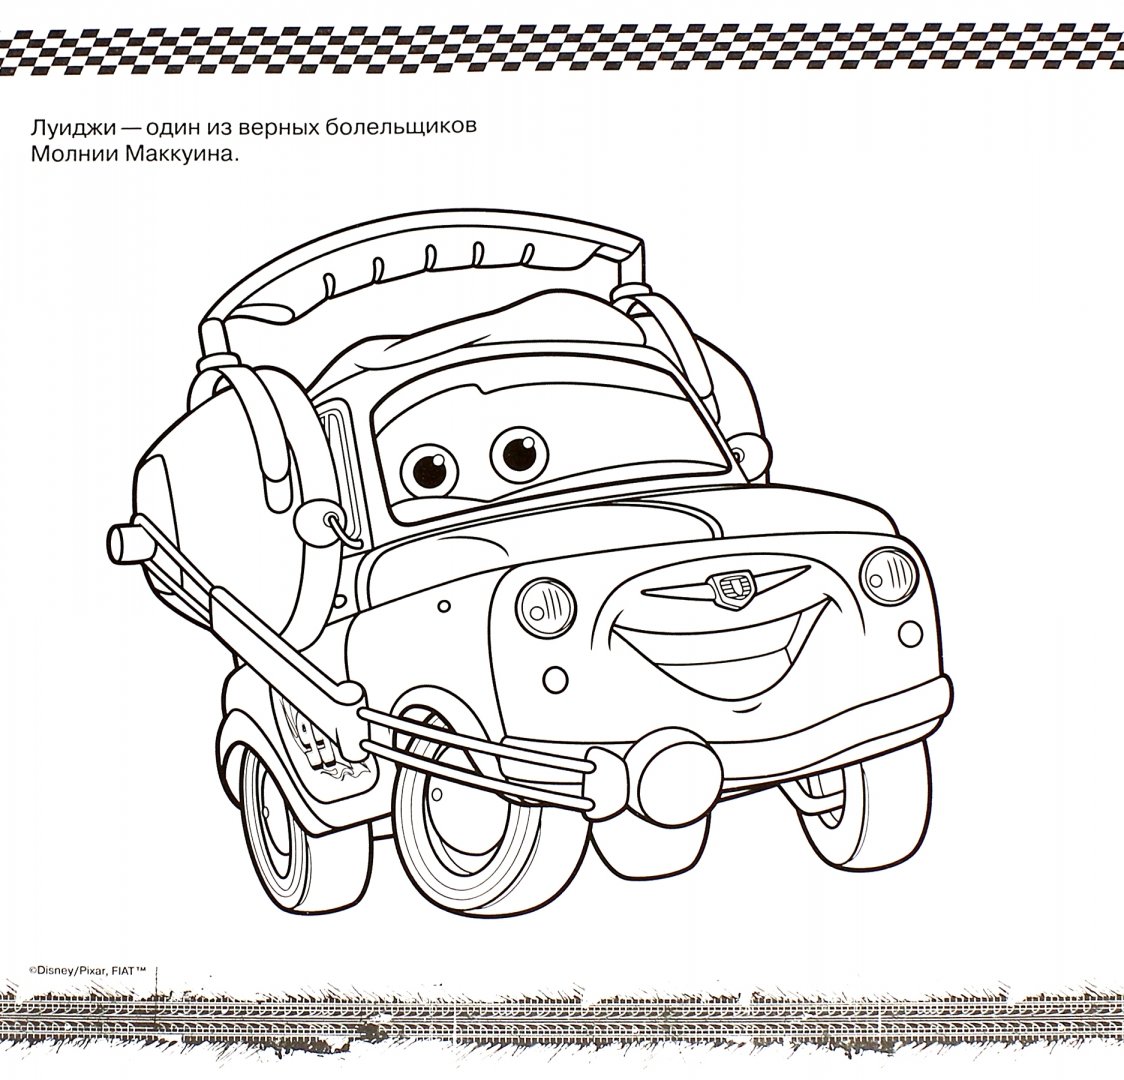 Иллюстрация 1 из 5 для Тачки 2. Мега-раскраска с наклейками (№1503) | Лабиринт - книги. Источник: Лабиринт